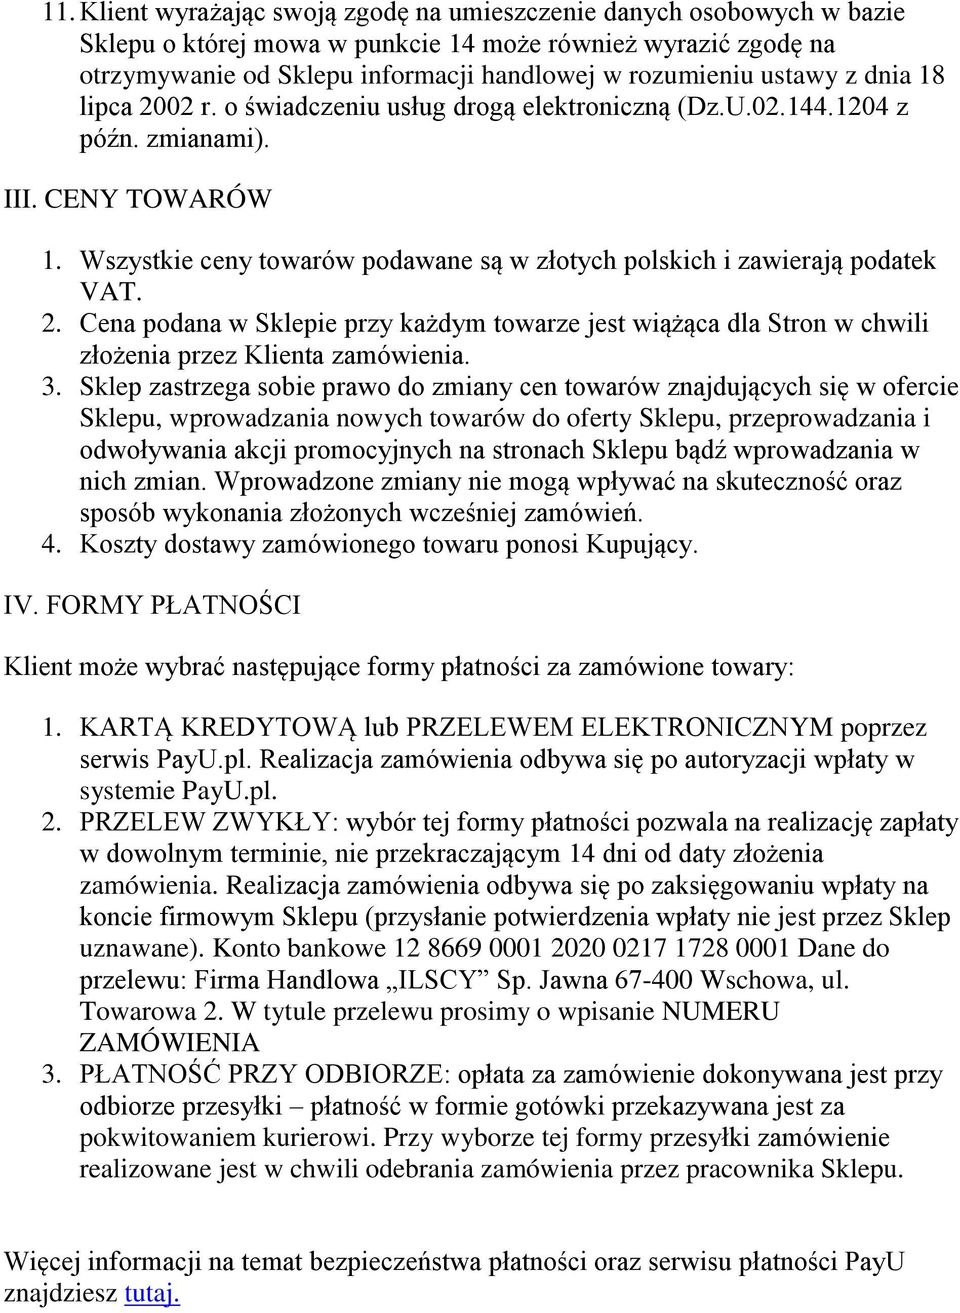 Wszystkie ceny towarów podawane są w złotych polskich i zawierają podatek VAT. 2. Cena podana w Sklepie przy każdym towarze jest wiążąca dla Stron w chwili złożenia przez Klienta zamówienia. 3.